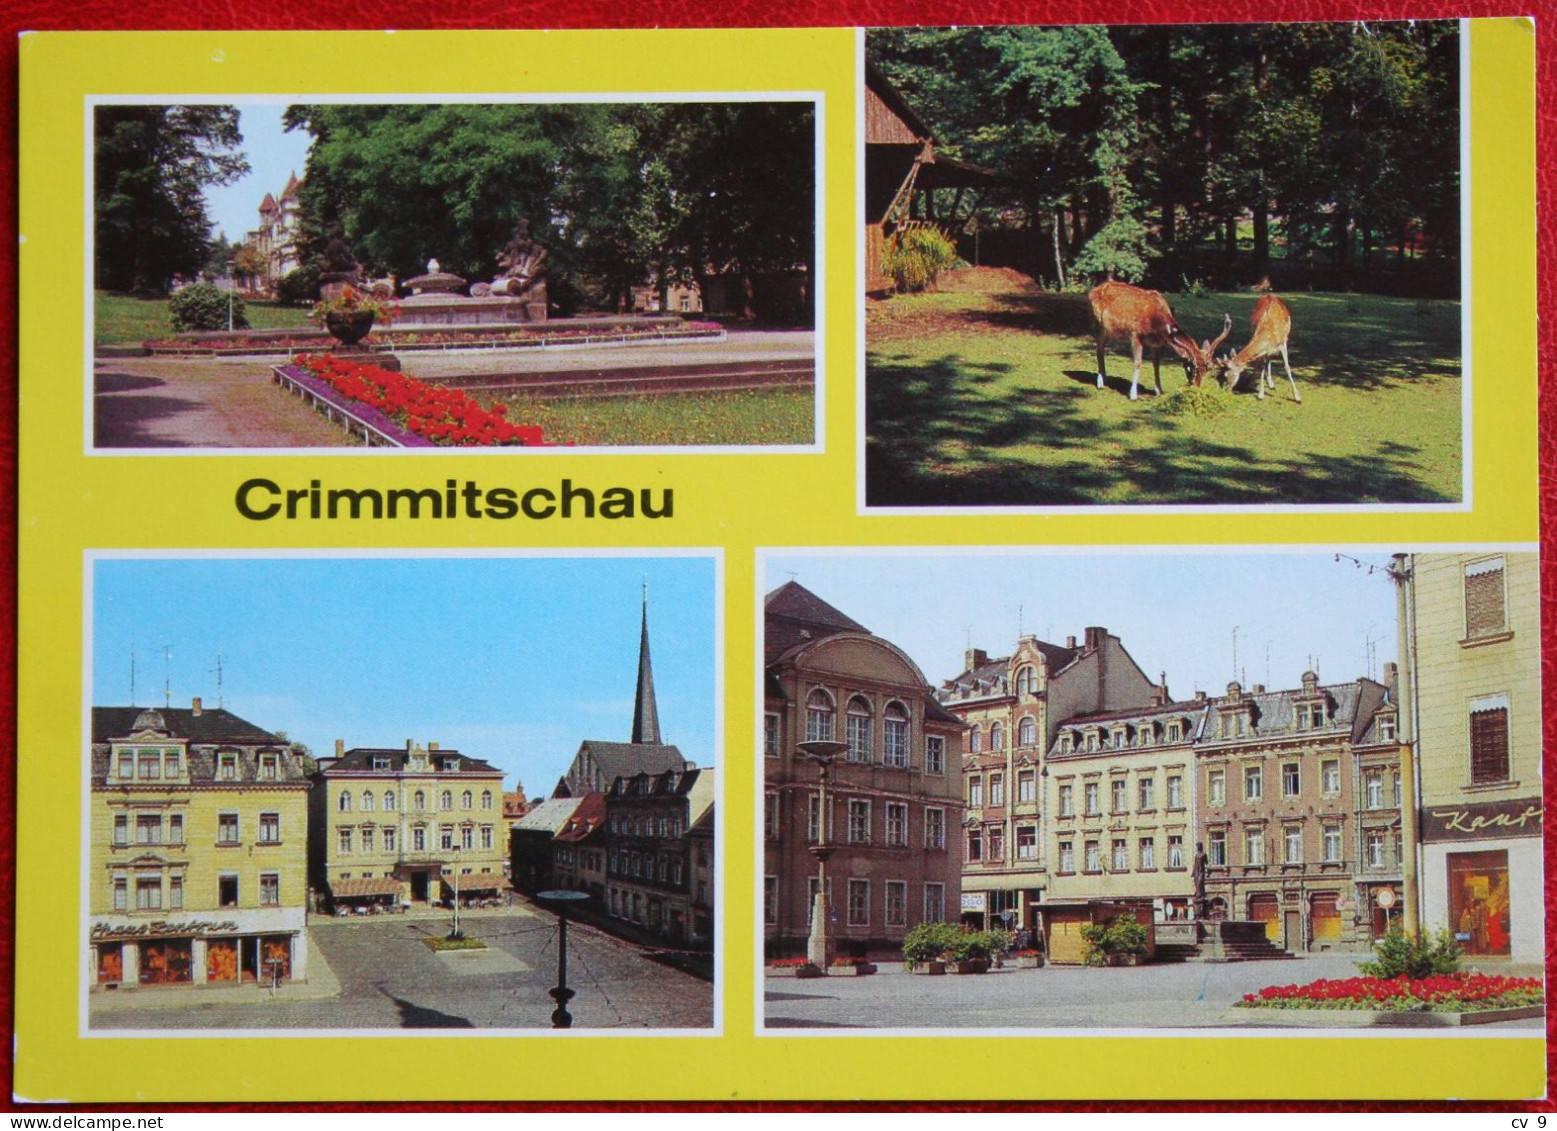 AK Crimmitschau Werdau Sahnpark Markt Bild Und Heimat Deutschland DDR Nicht Gelaufen Postcard D16 - Crimmitschau